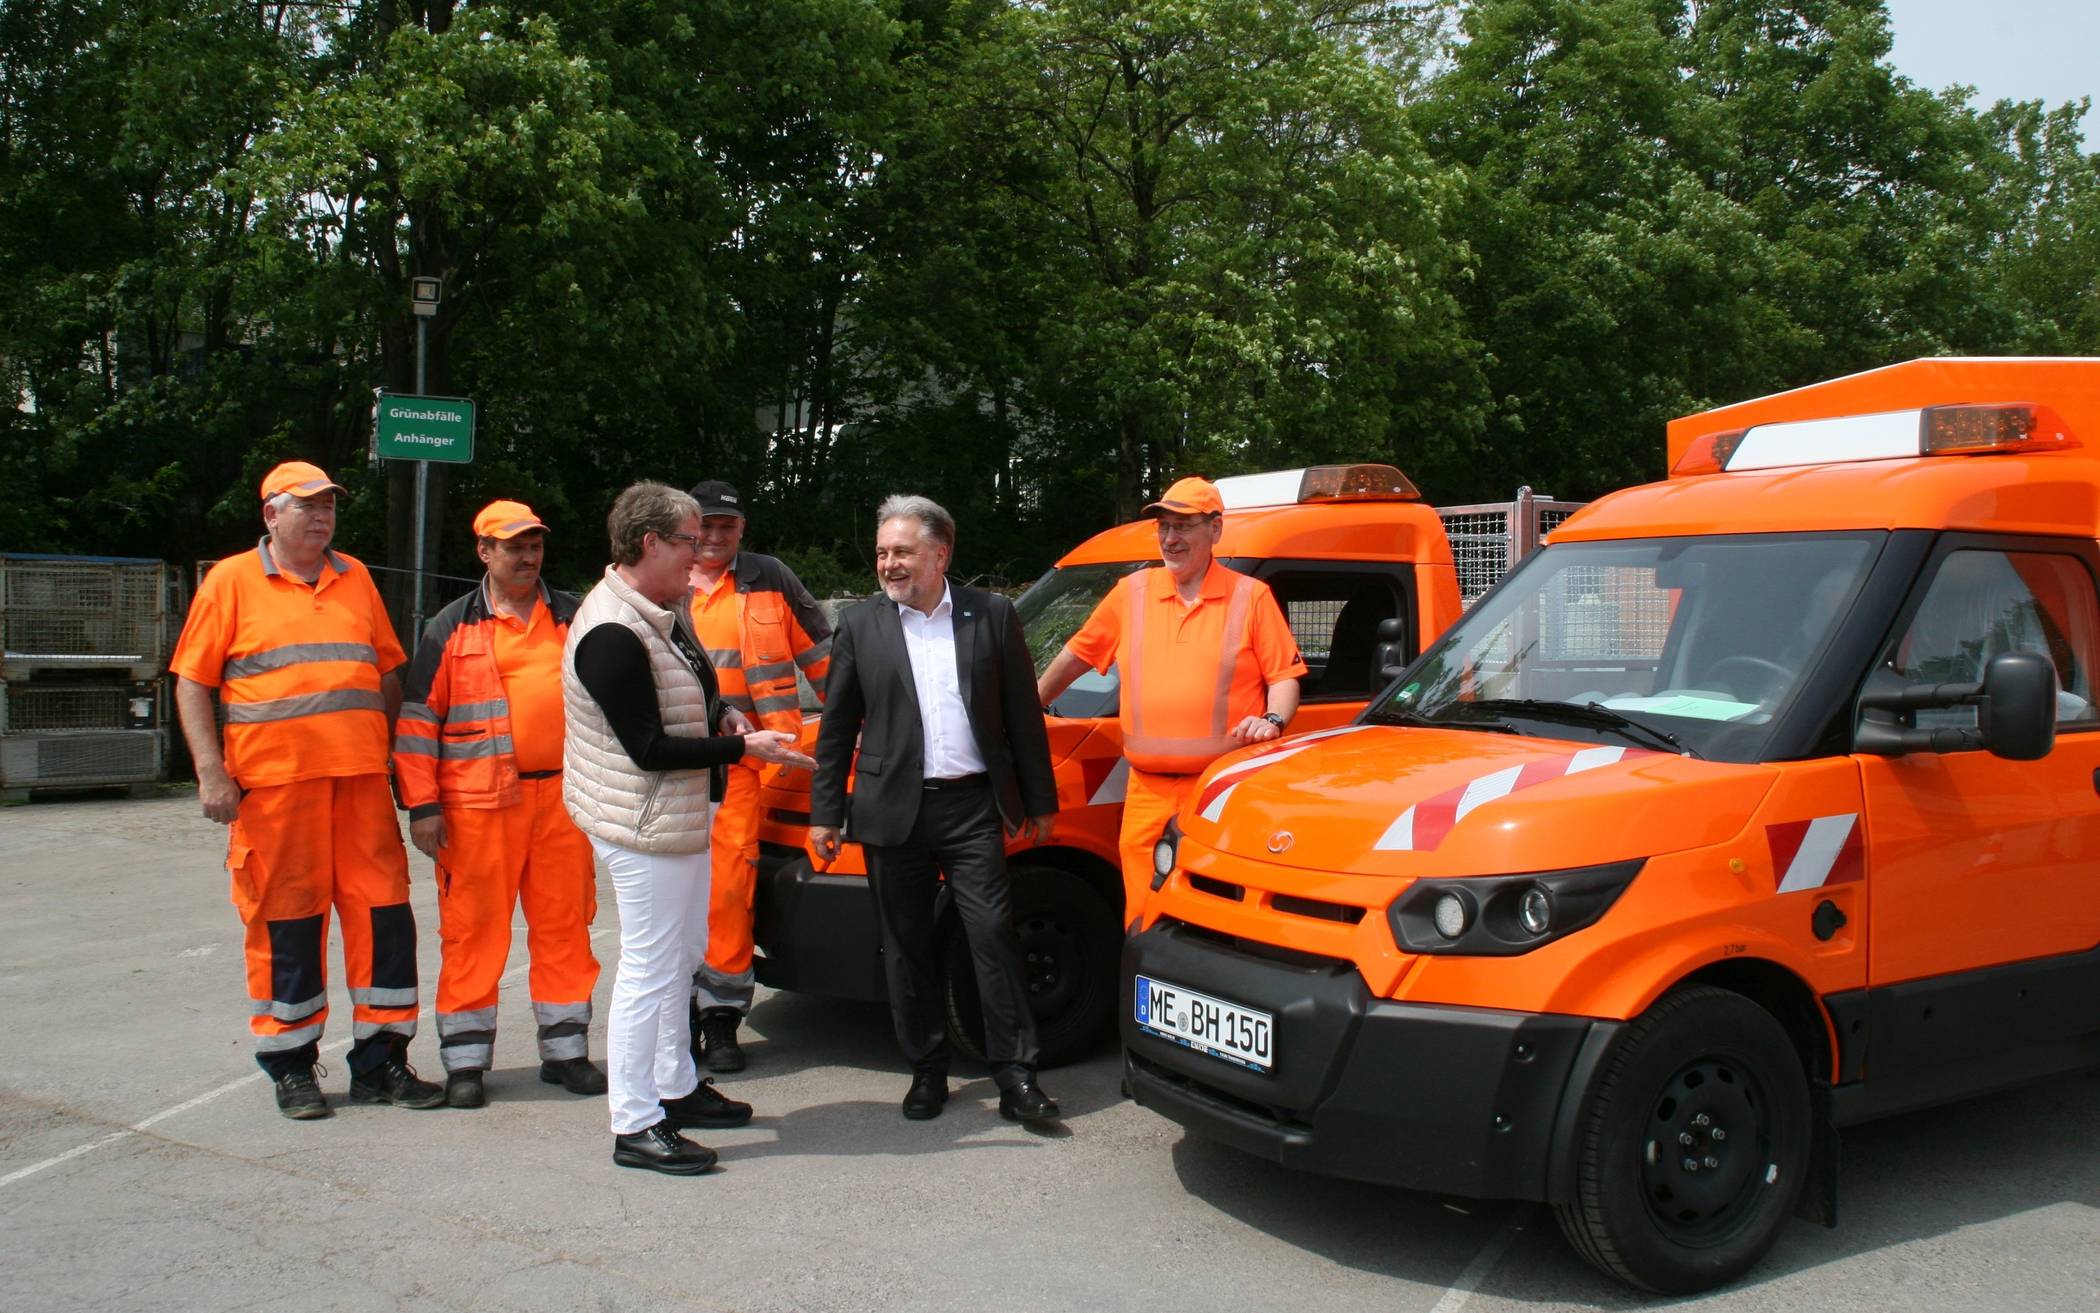  Der Mettmanner Baubetriebshof ist für die Abfallentsorgung in Mettmann zuständig. Auf unserem Archivbild übergibt Bürgermeister Dinkelmann die neuen E-Fahrzeuge an die Mitarbeiter.  